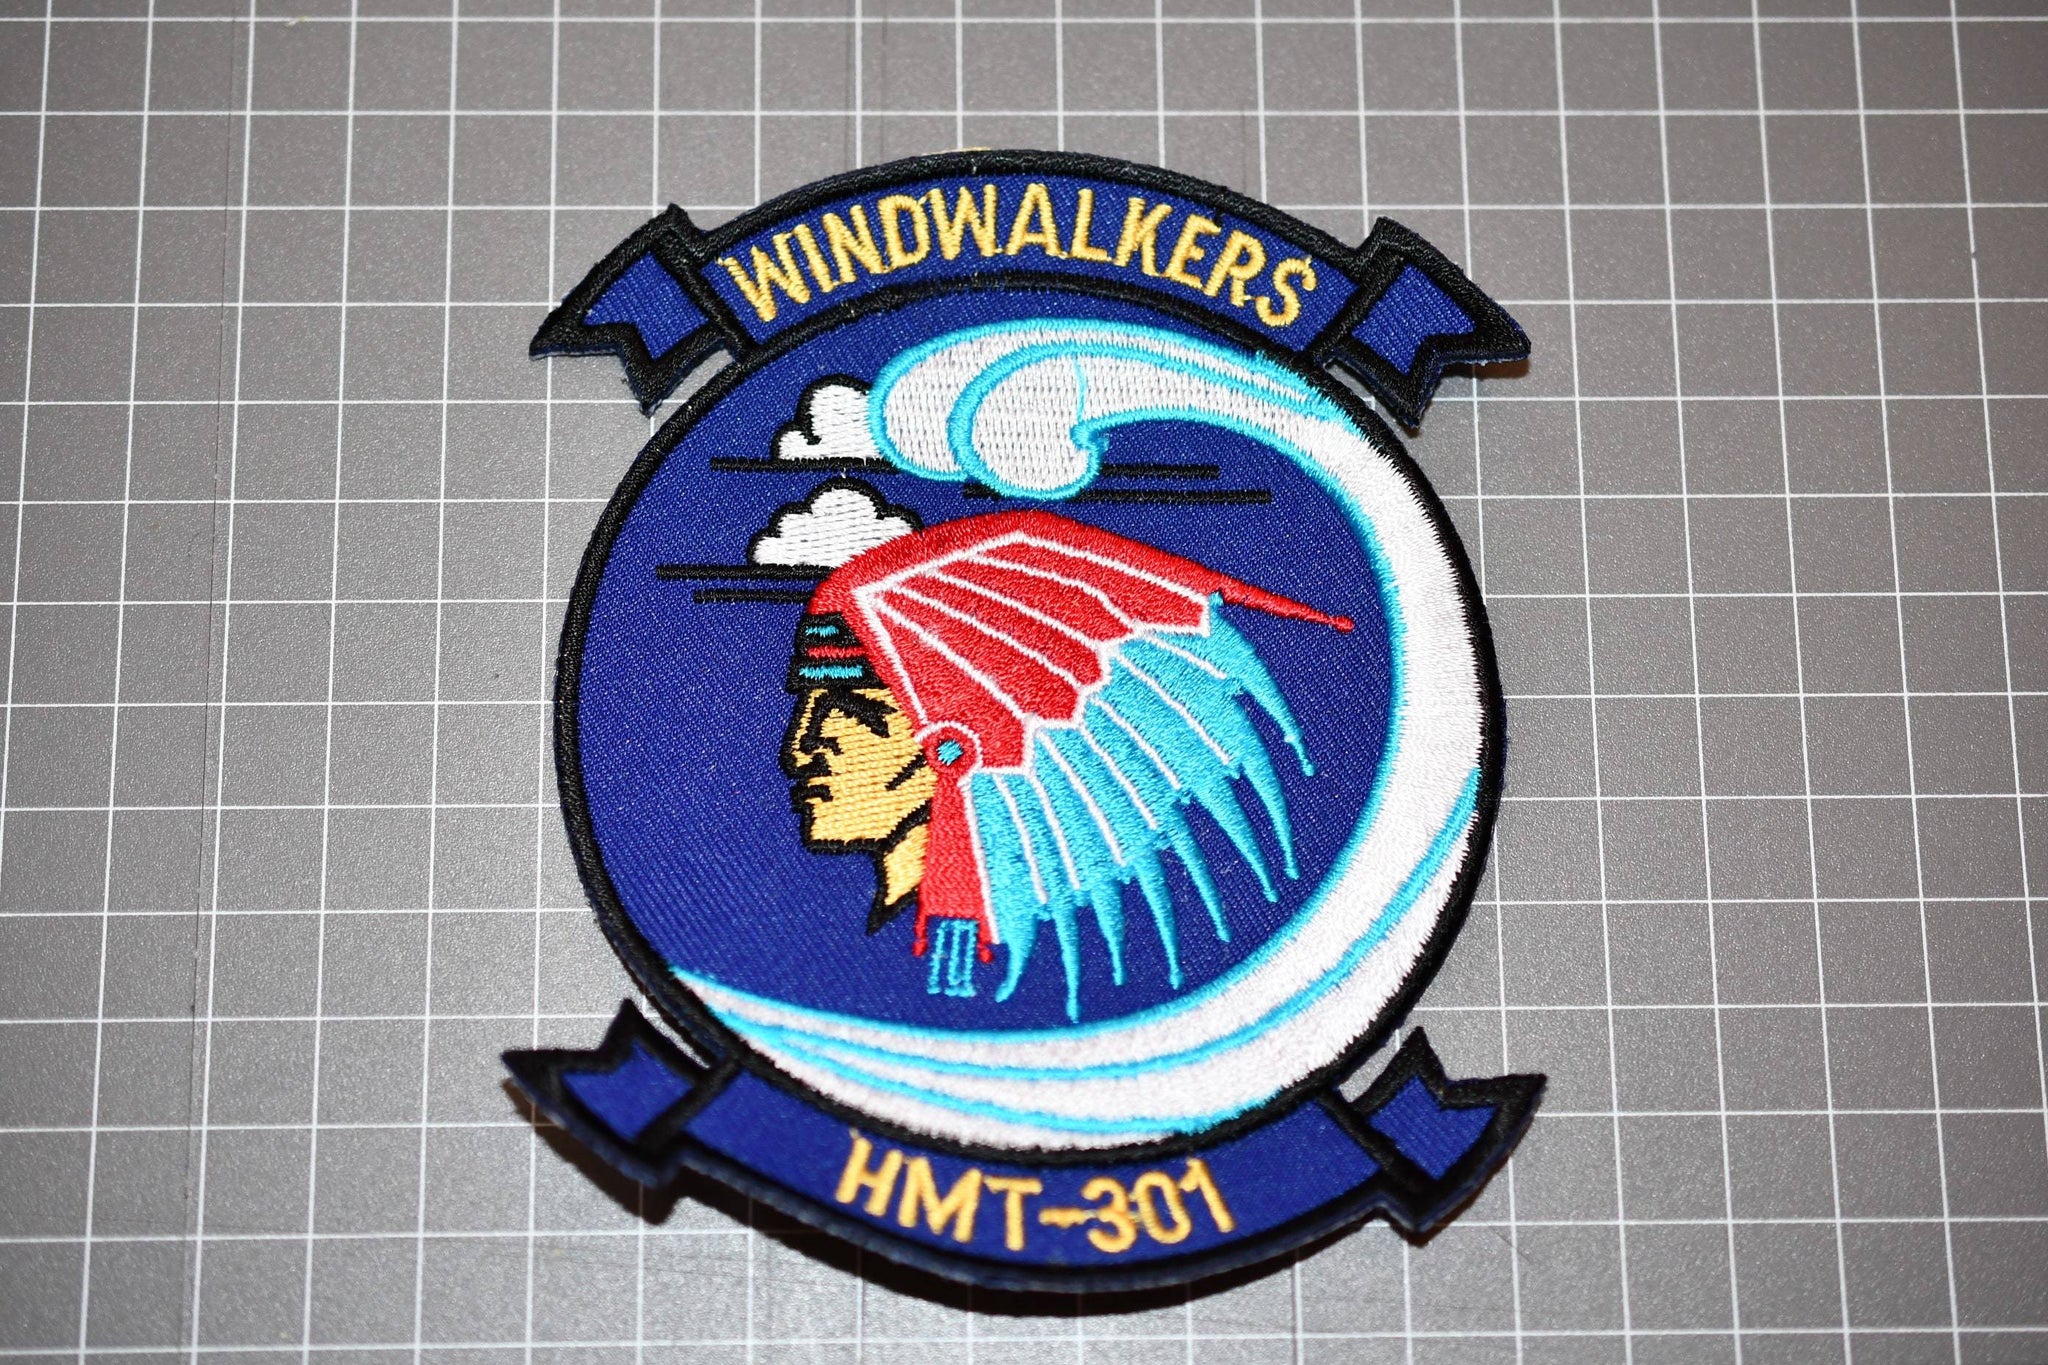 USMC HMT-301 "Windwalkers" Patch (B10-047)